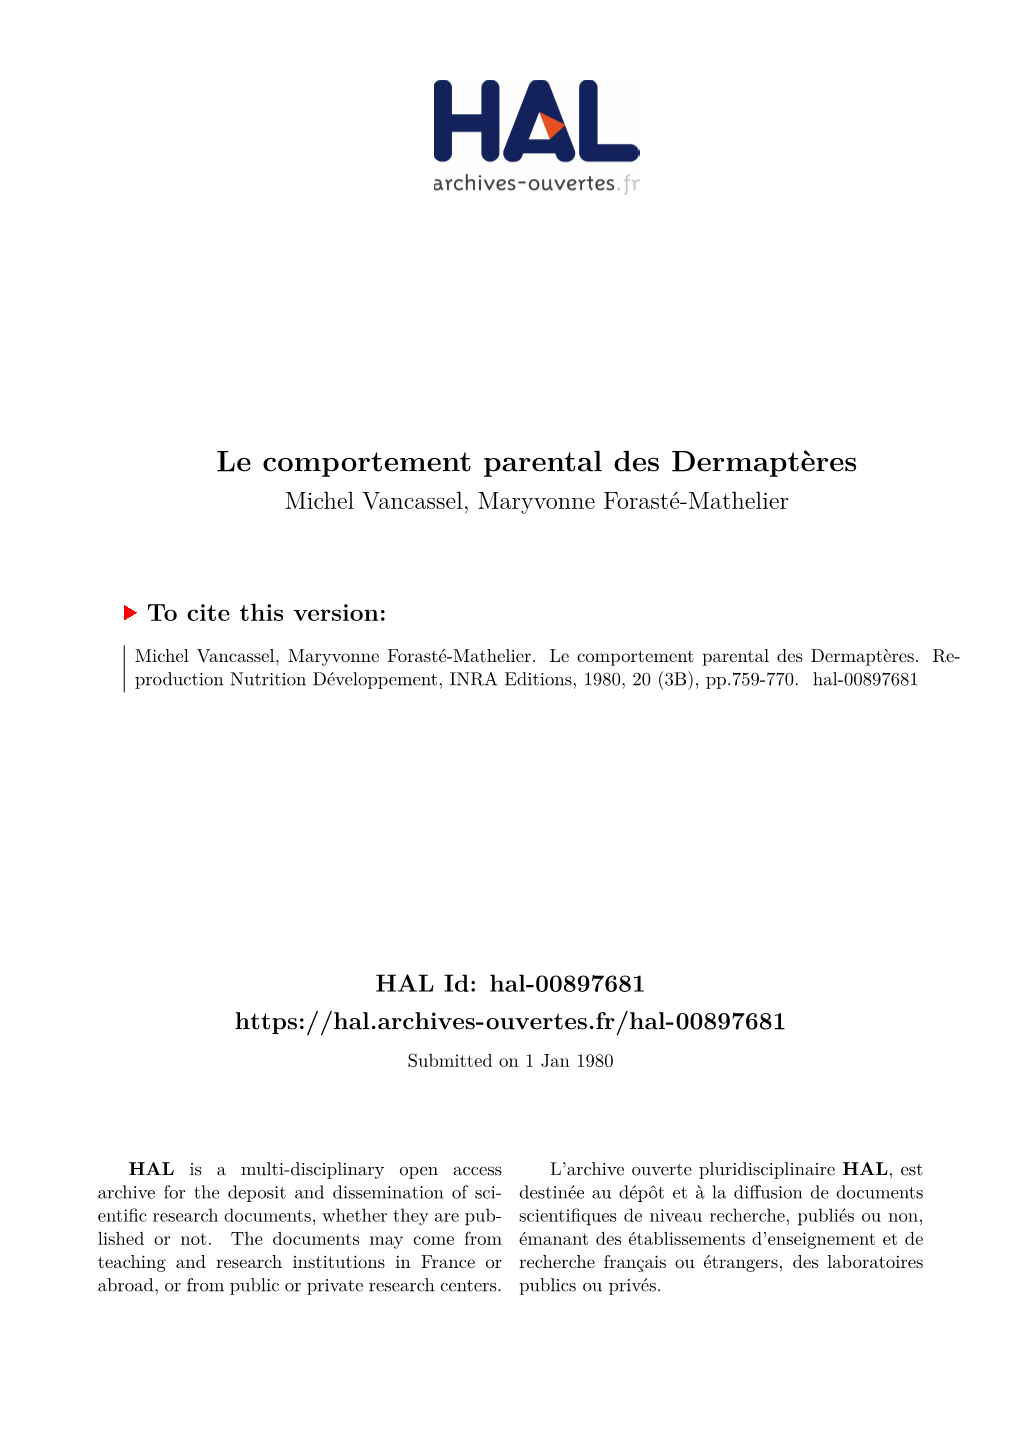 Le Comportement Parental Des Dermaptères Michel Vancassel, Maryvonne Forasté-Mathelier